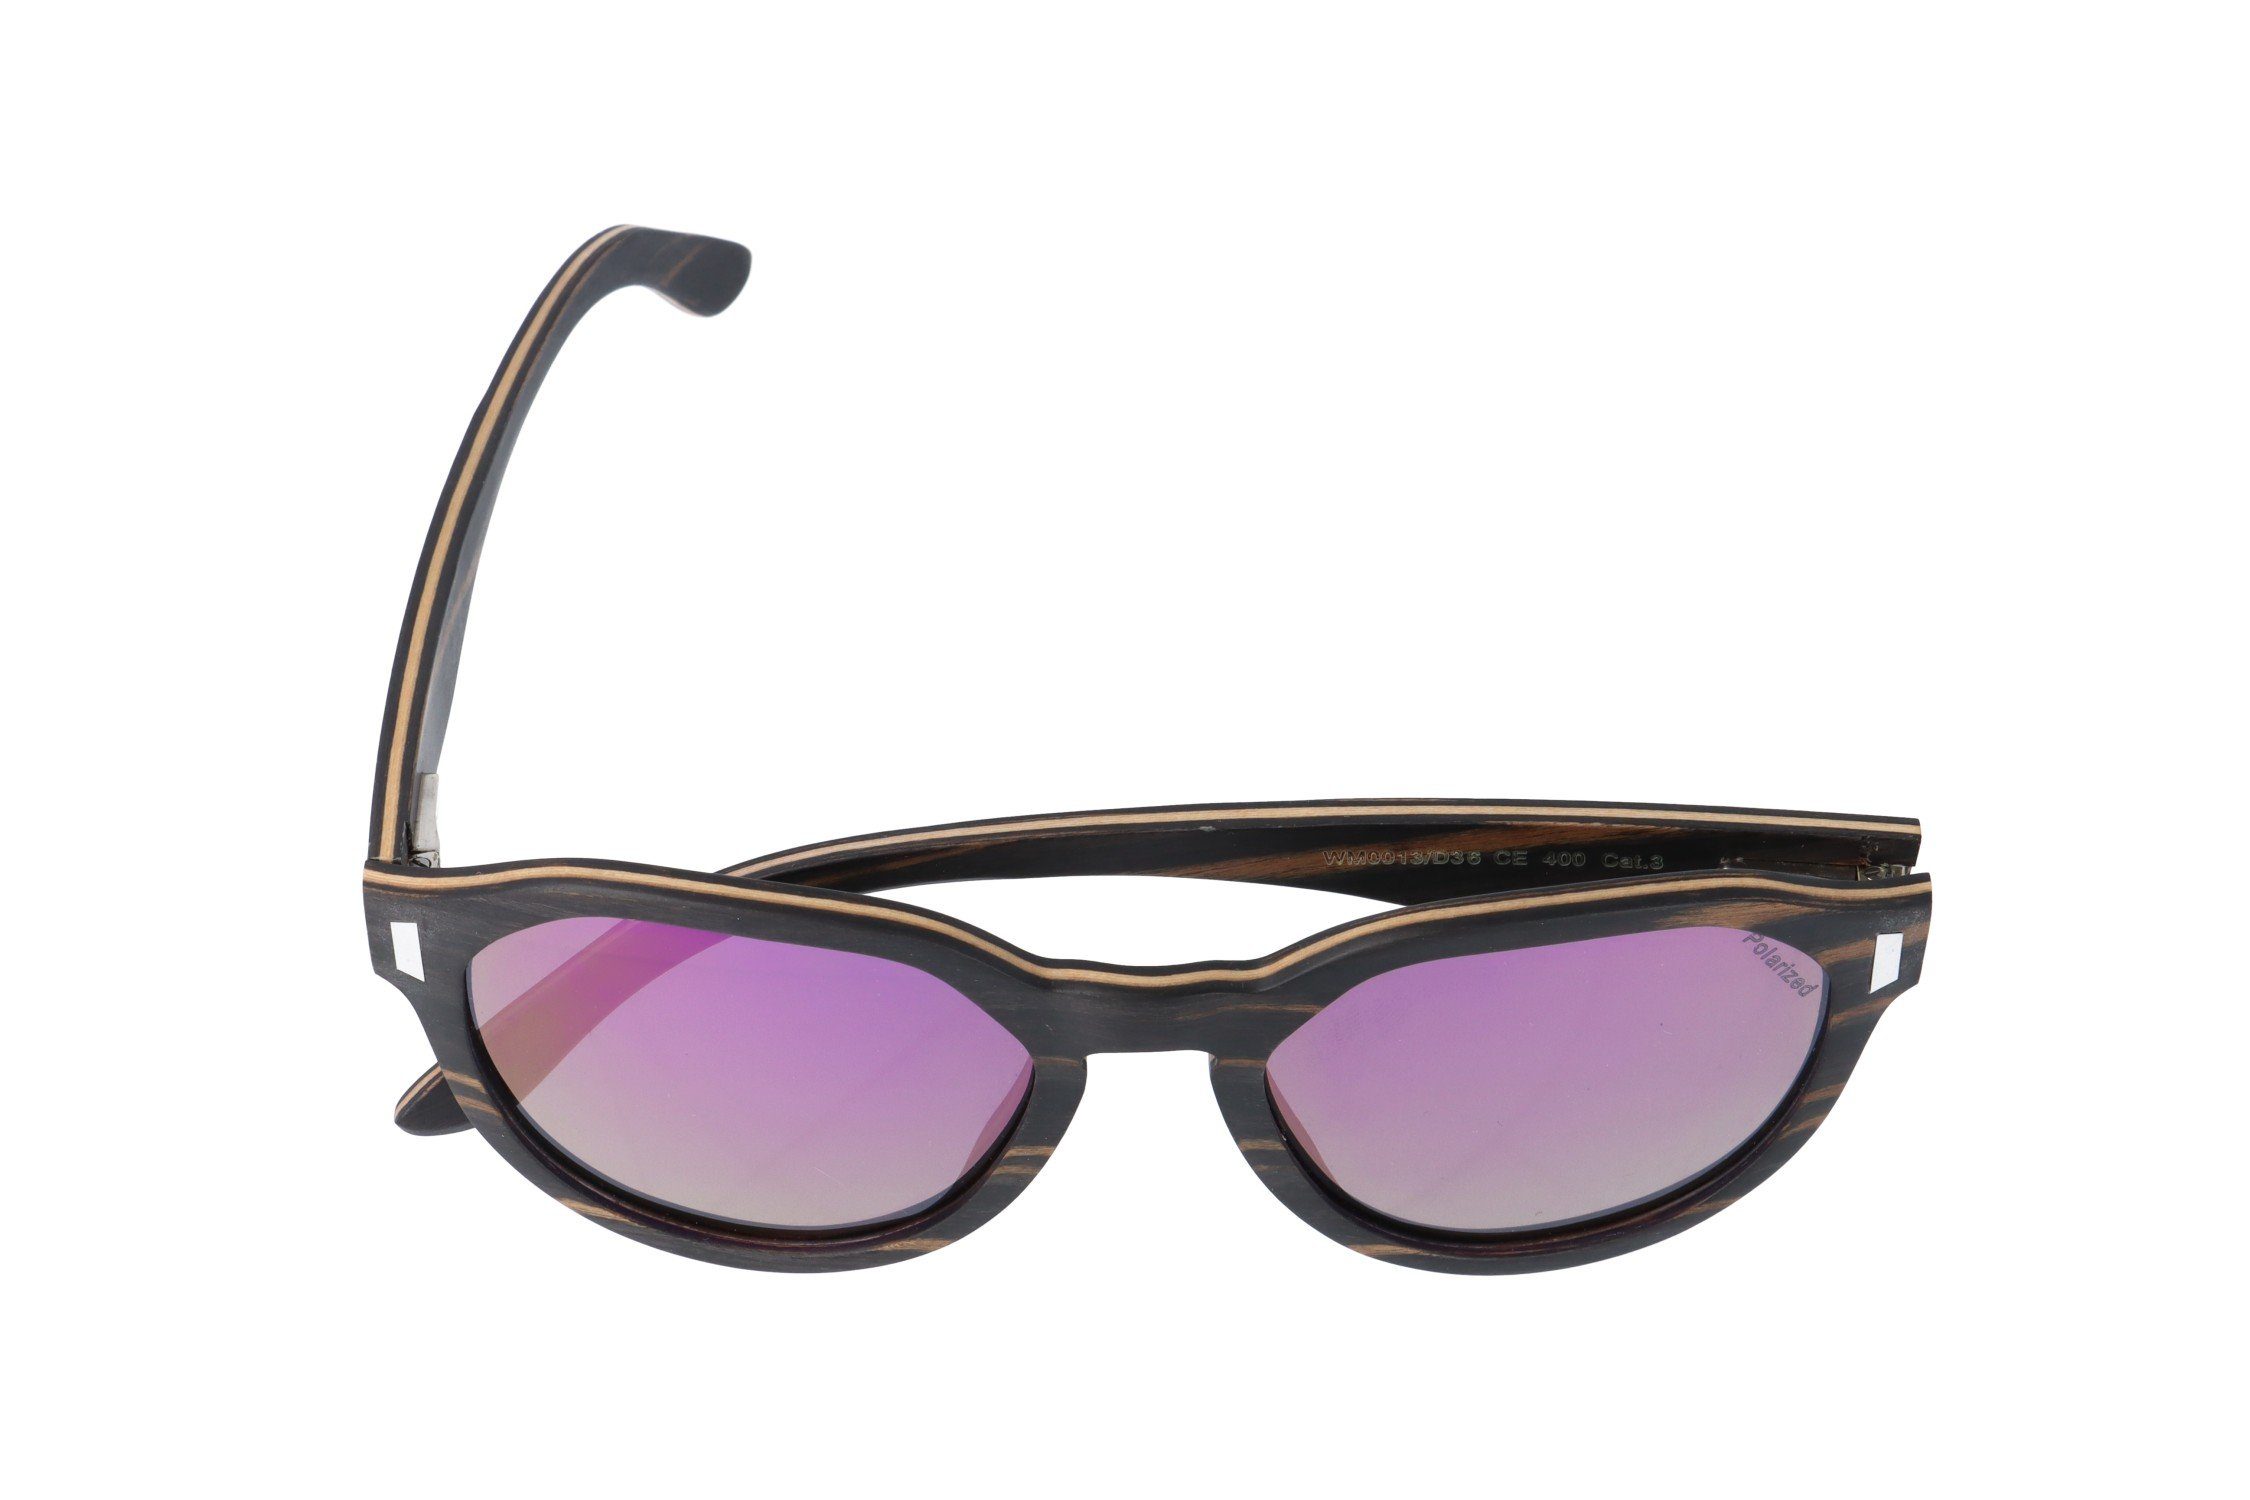 Gläser grau, lila Brille polarisierte GAMSSTYLE WM0013 Gamswild Unisex, Sonnenbrille Herren Damen Holzbrille in braun,